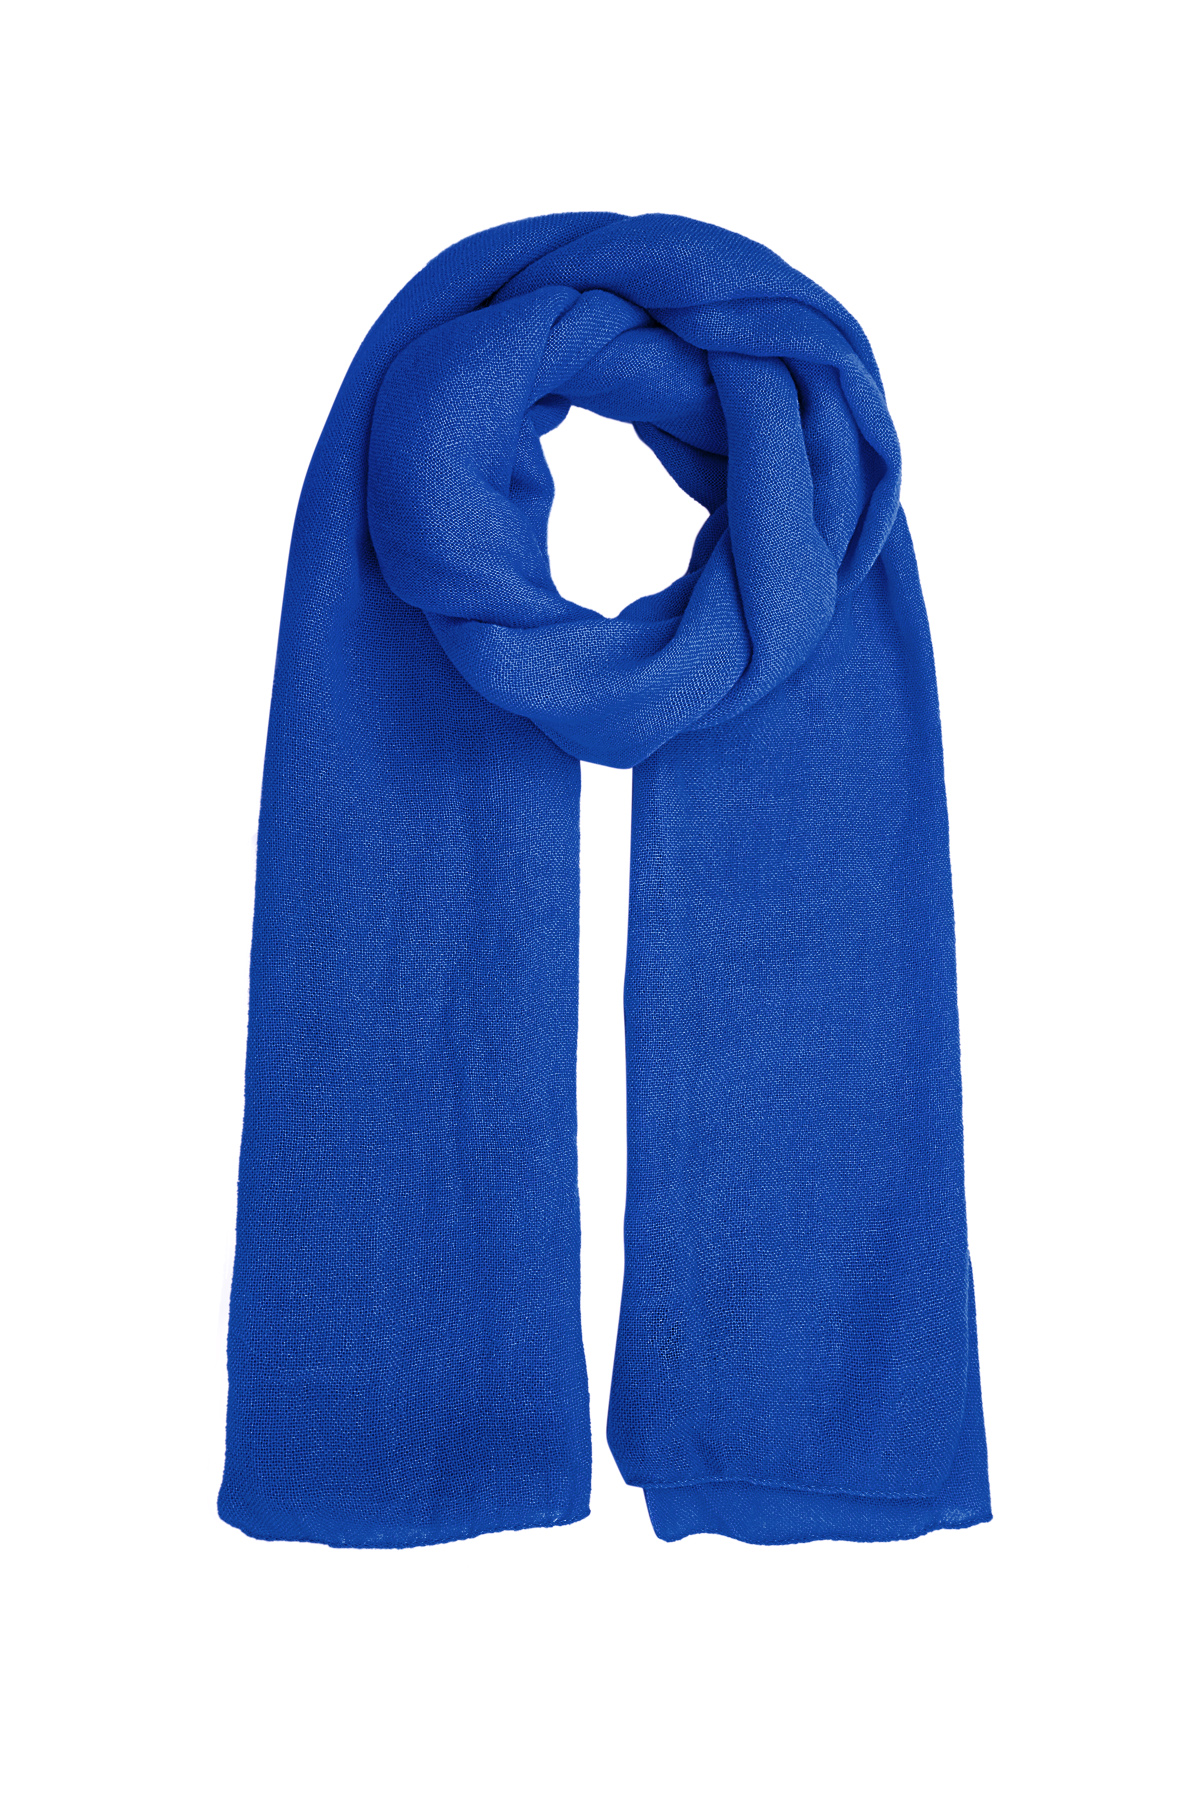 Sjaal effen kleur - kobalt blauw